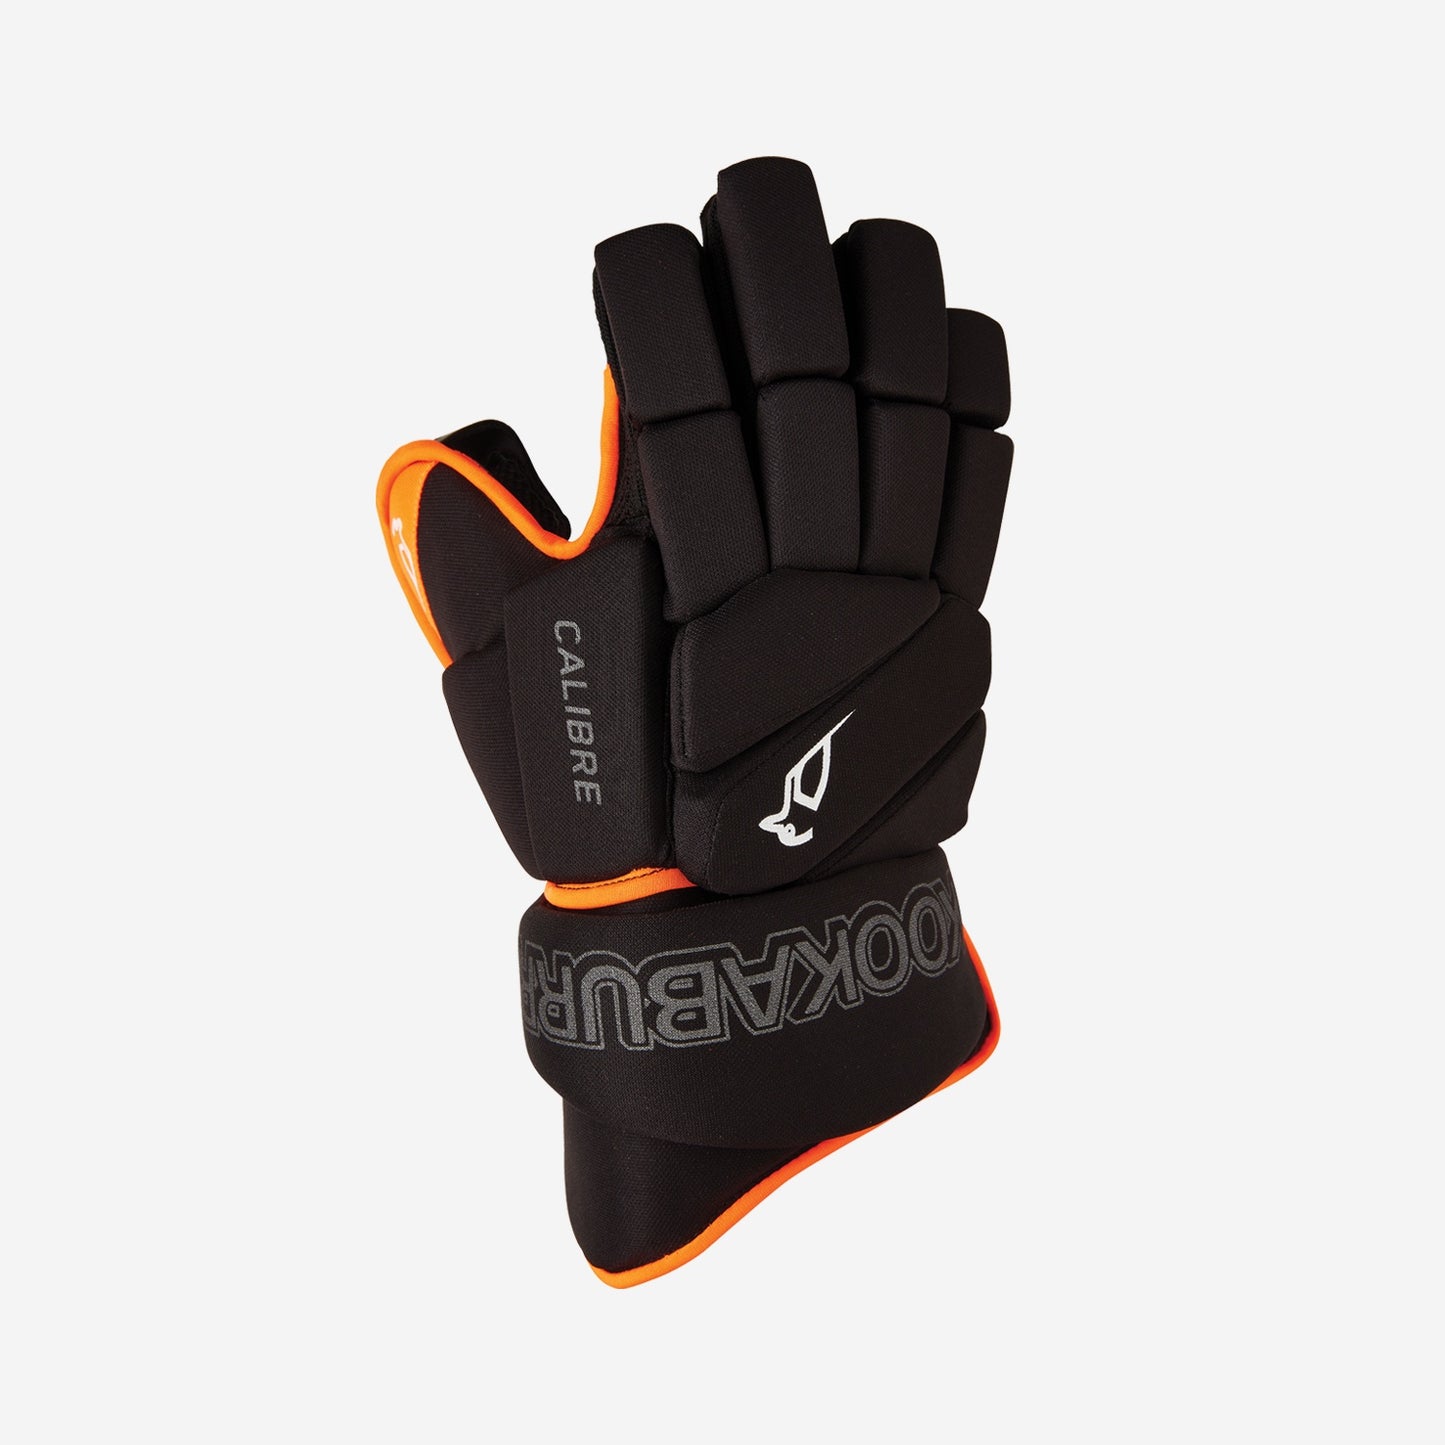 Penalty Corner Gloves